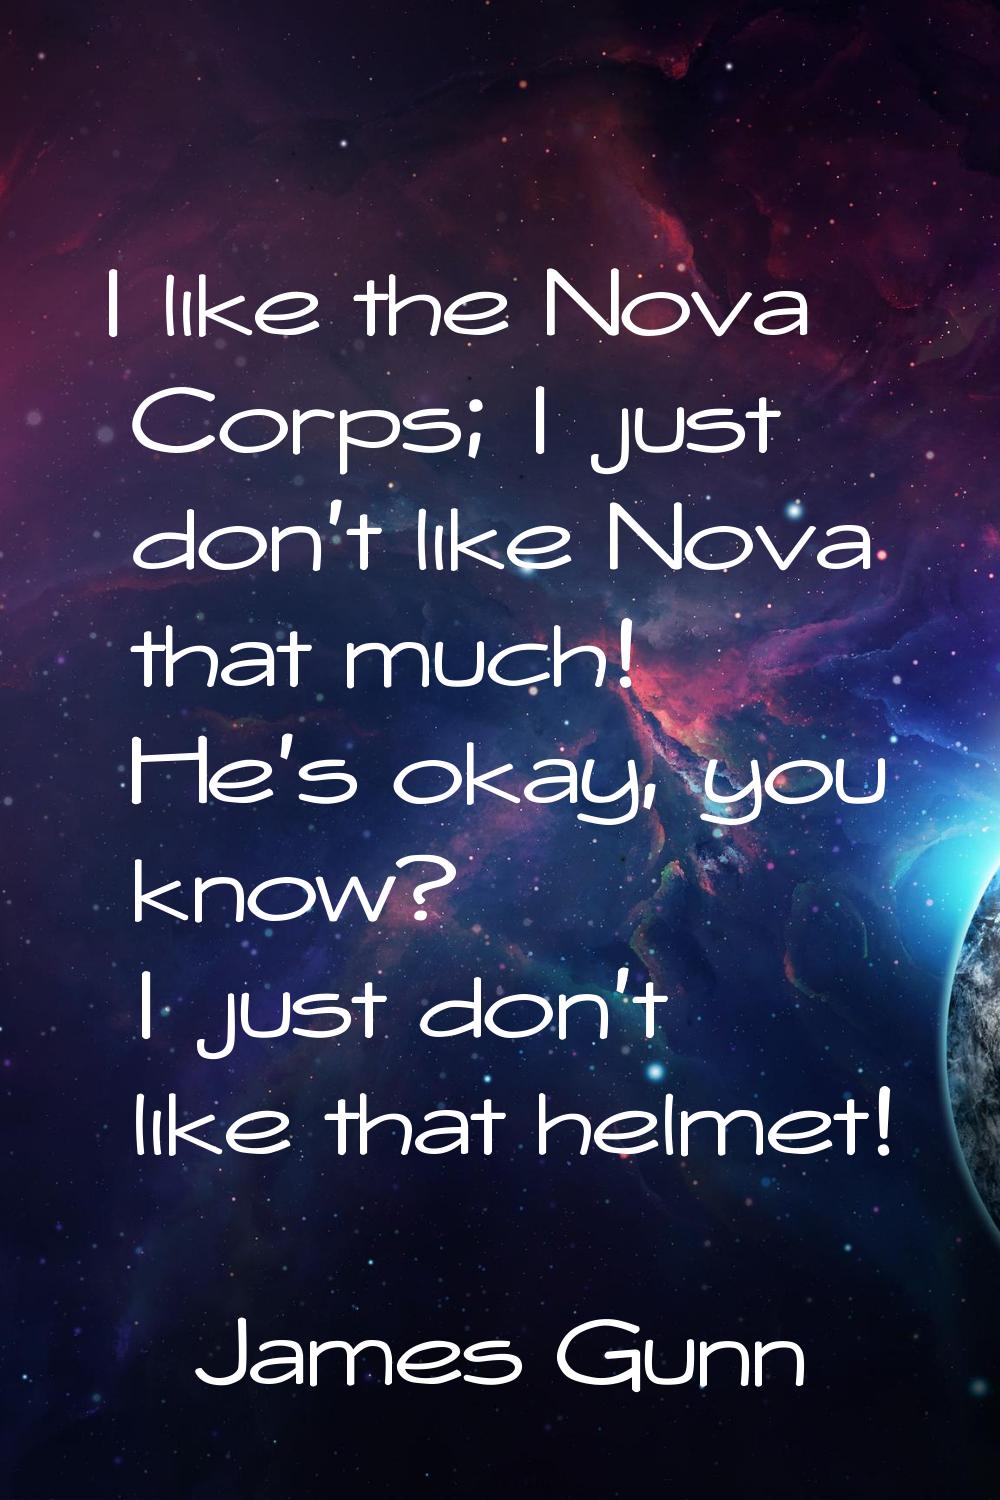 I like the Nova Corps; I just don't like Nova that much! He's okay, you know? I just don't like tha